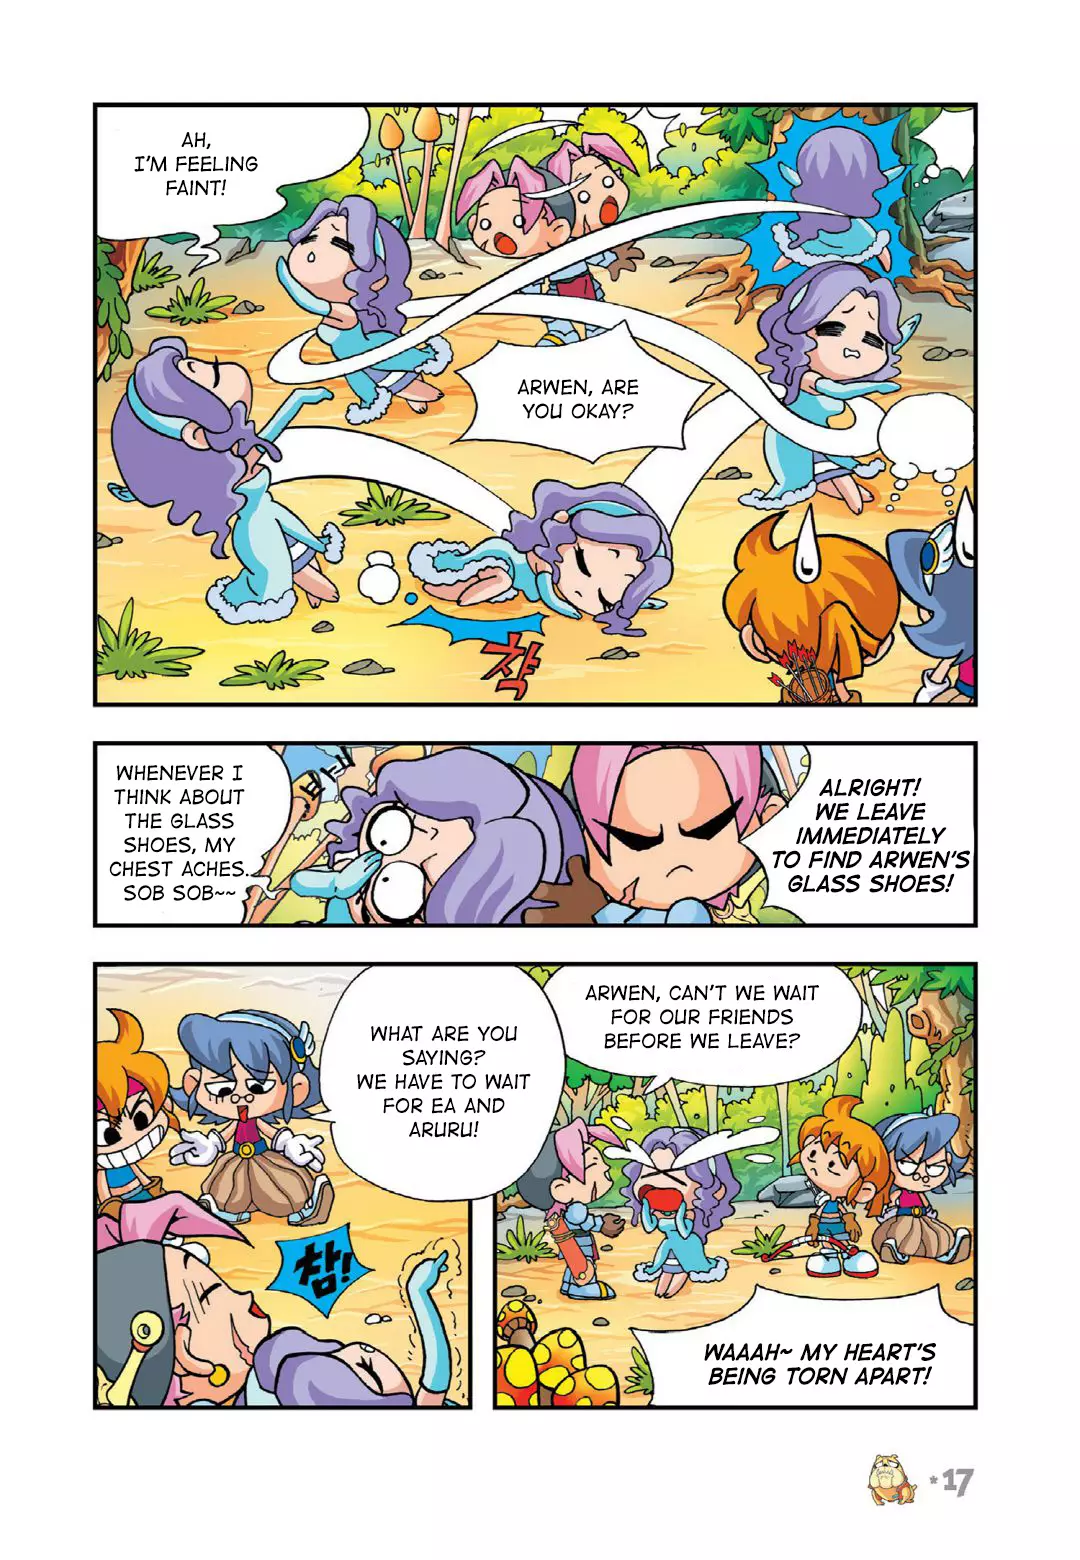 Comic Maplestory Offline Rpg - 15 page 16-52c4e17e